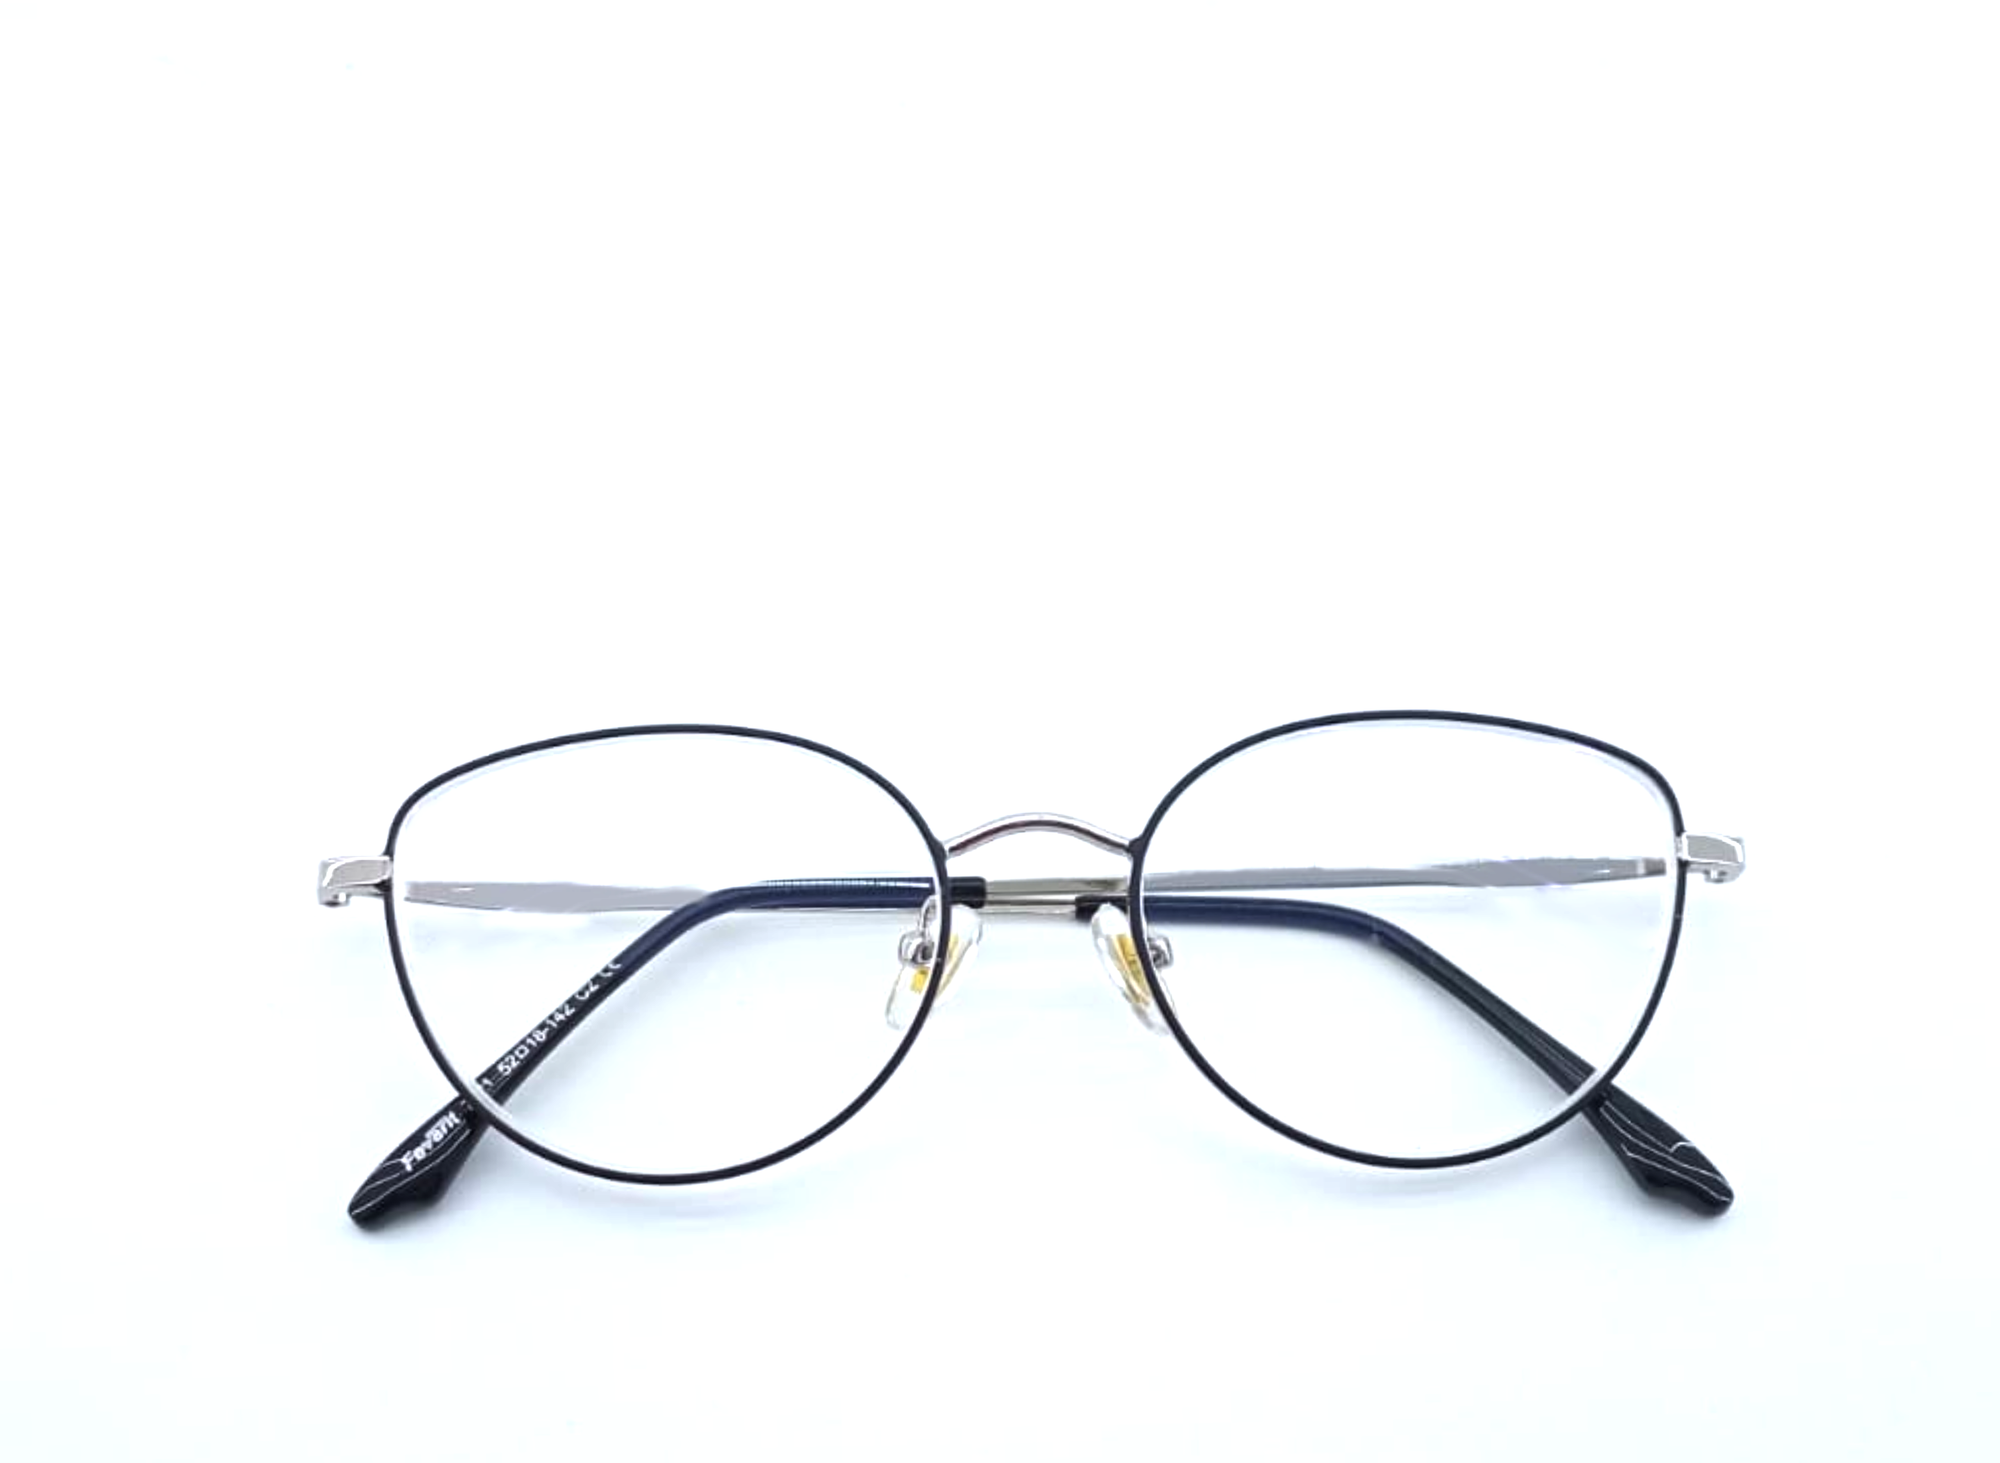 Готовые очки для зрения с межзрачковым расстоянием 58-60 мм и диоптриями -4.0